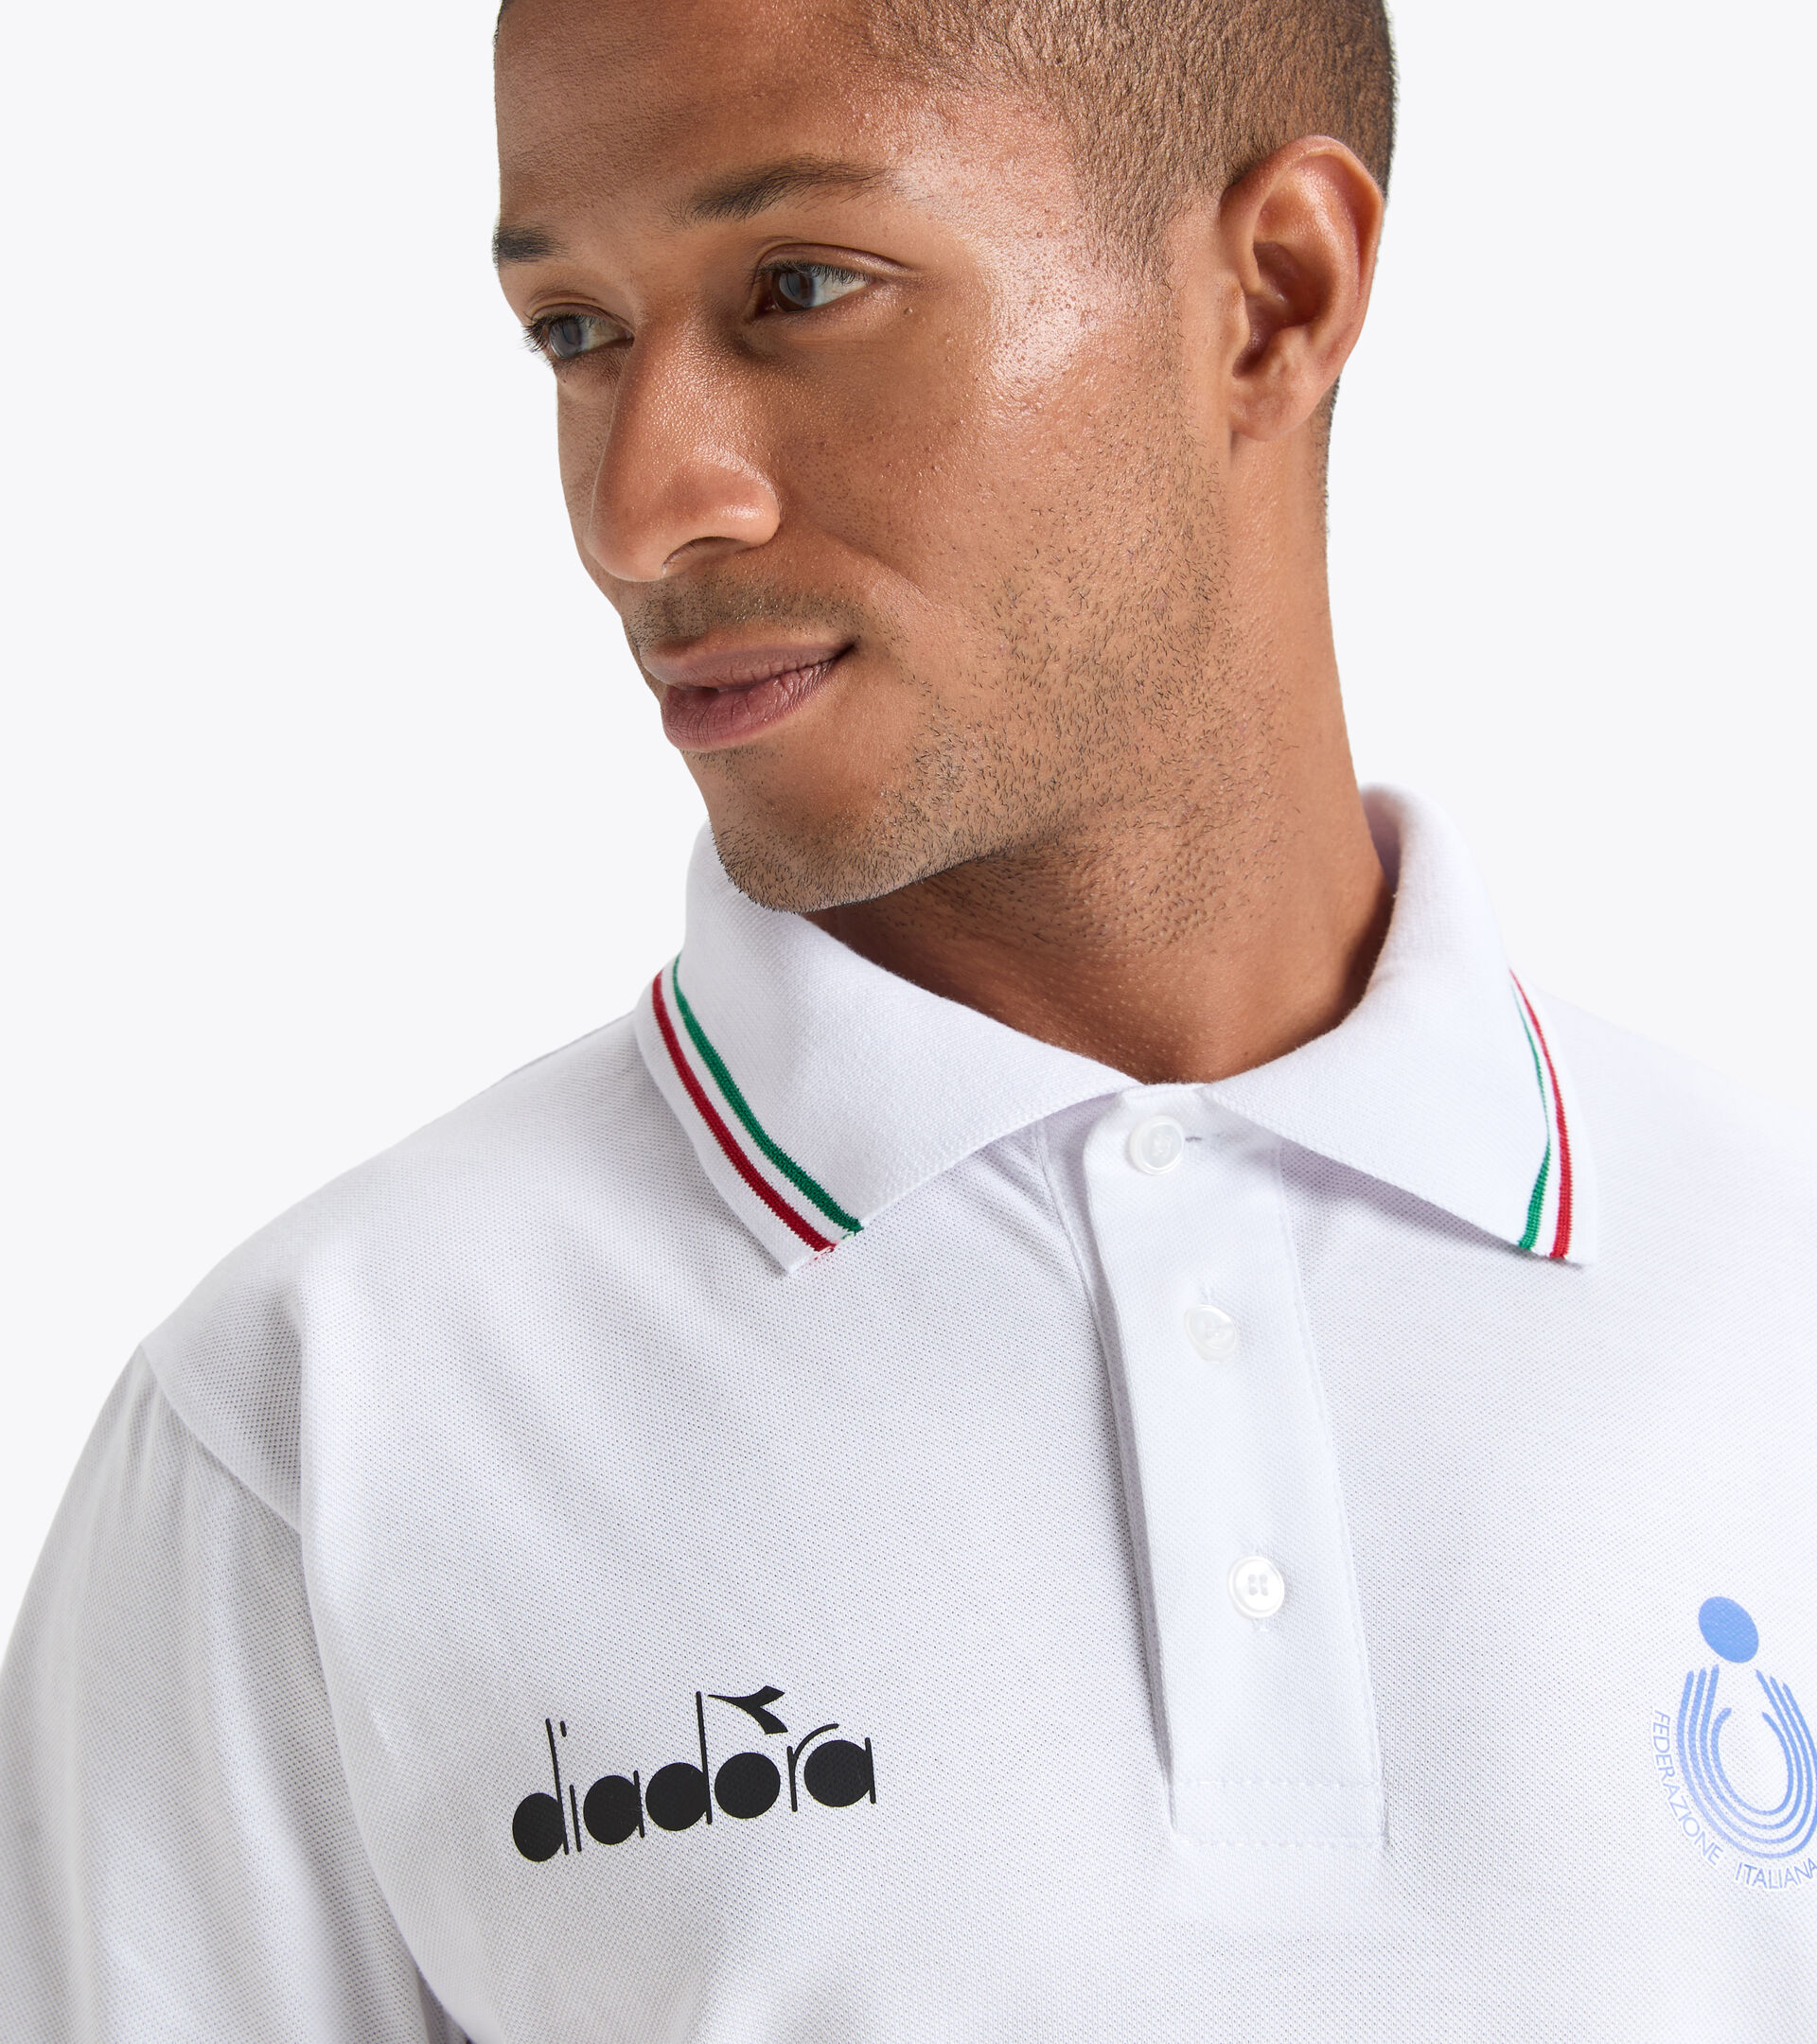 Polo shirt - Italy National Volleyball Team  POLO RAPPRESENTANZA BV ITALIA OPTICAL WHITE - Diadora